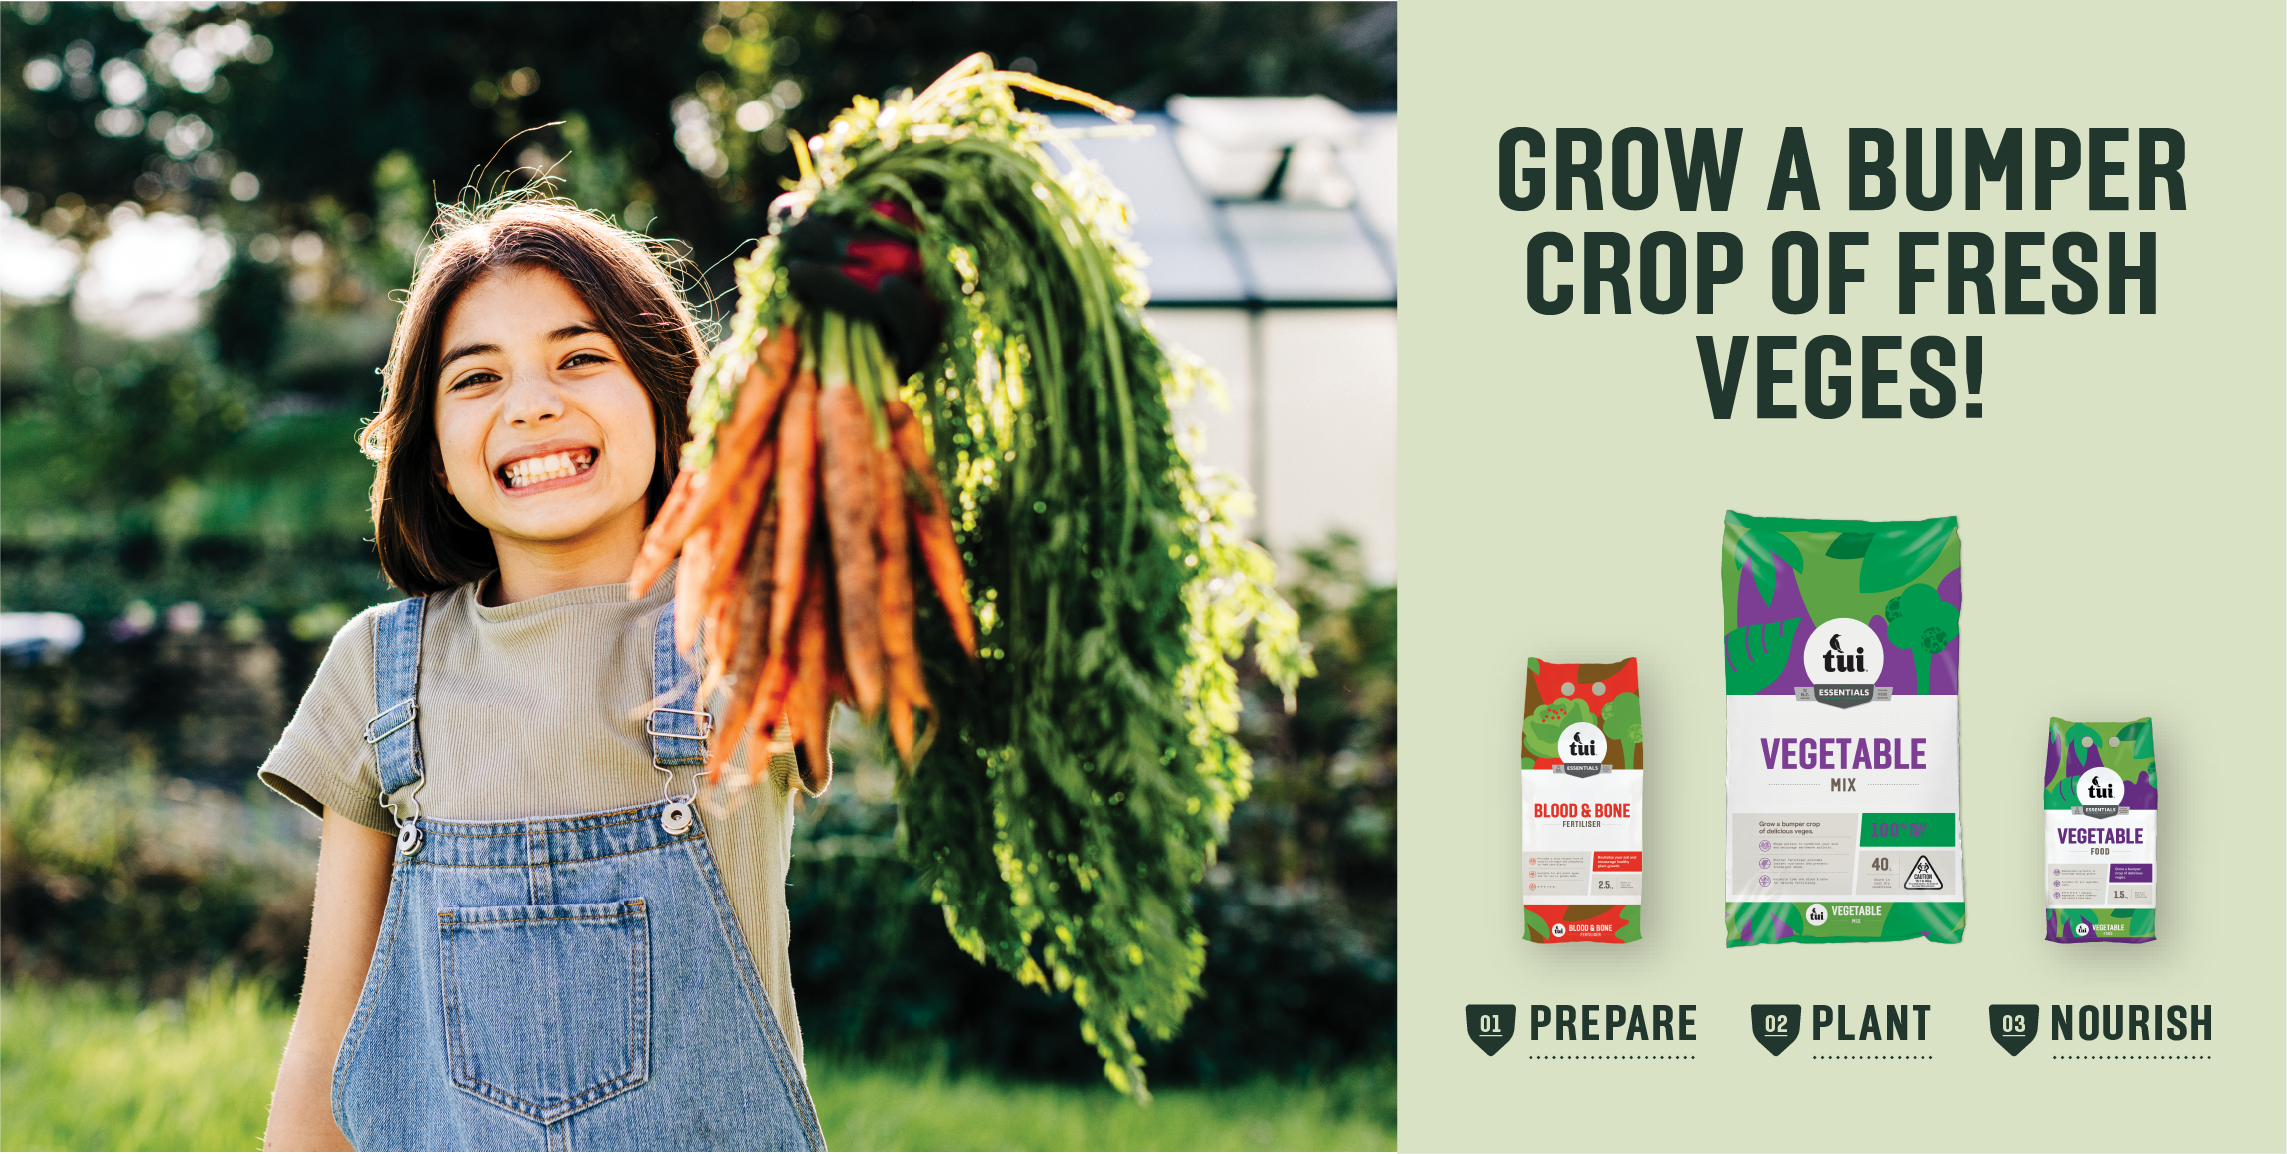 Grow a bumper crop of veges